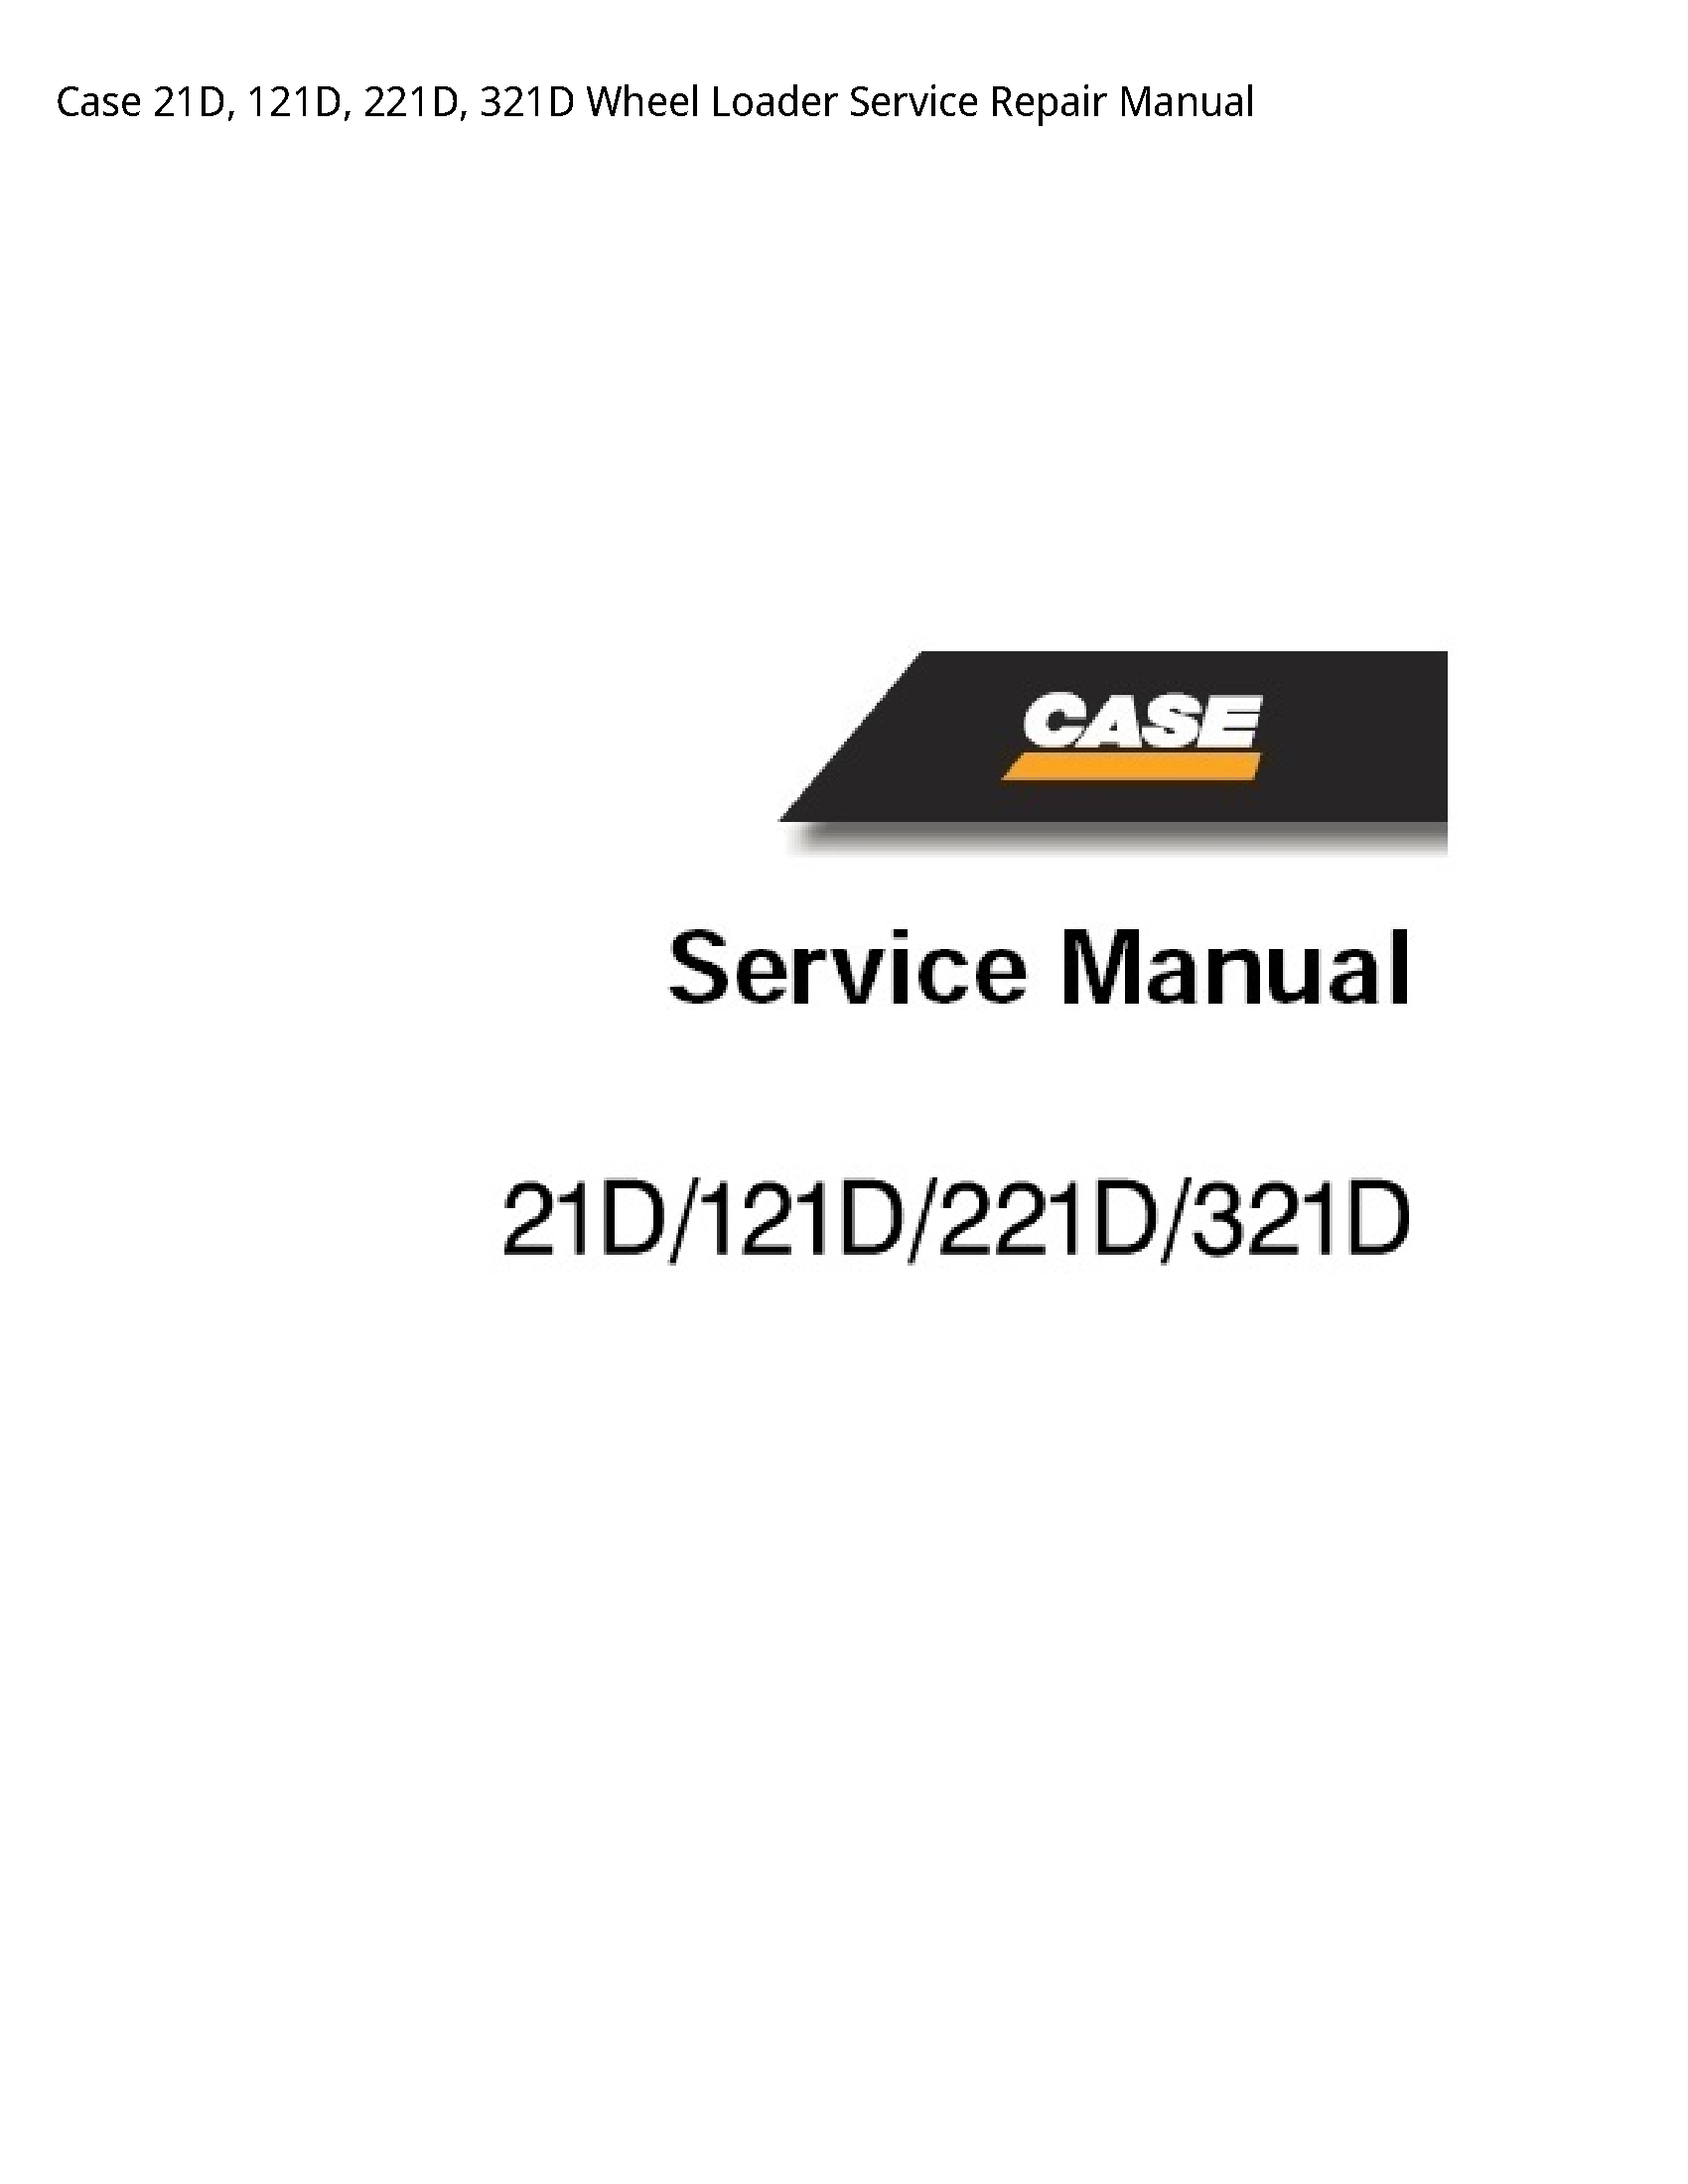 Case/Case IH 21D Wheel Loader manual